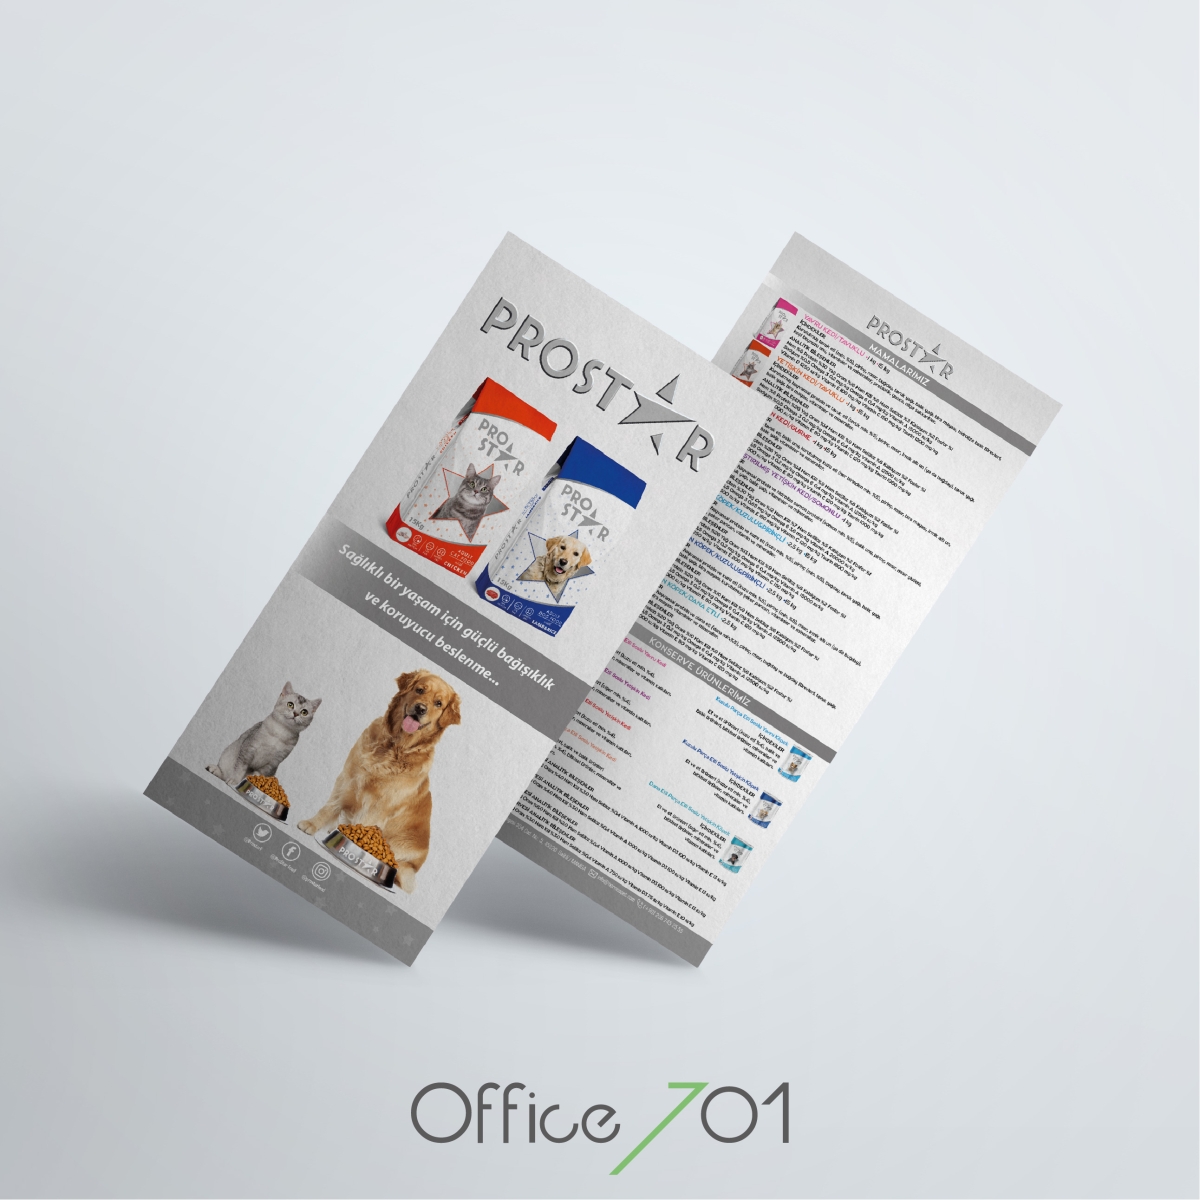 Office701 | Prostar Broşür Tasarımı